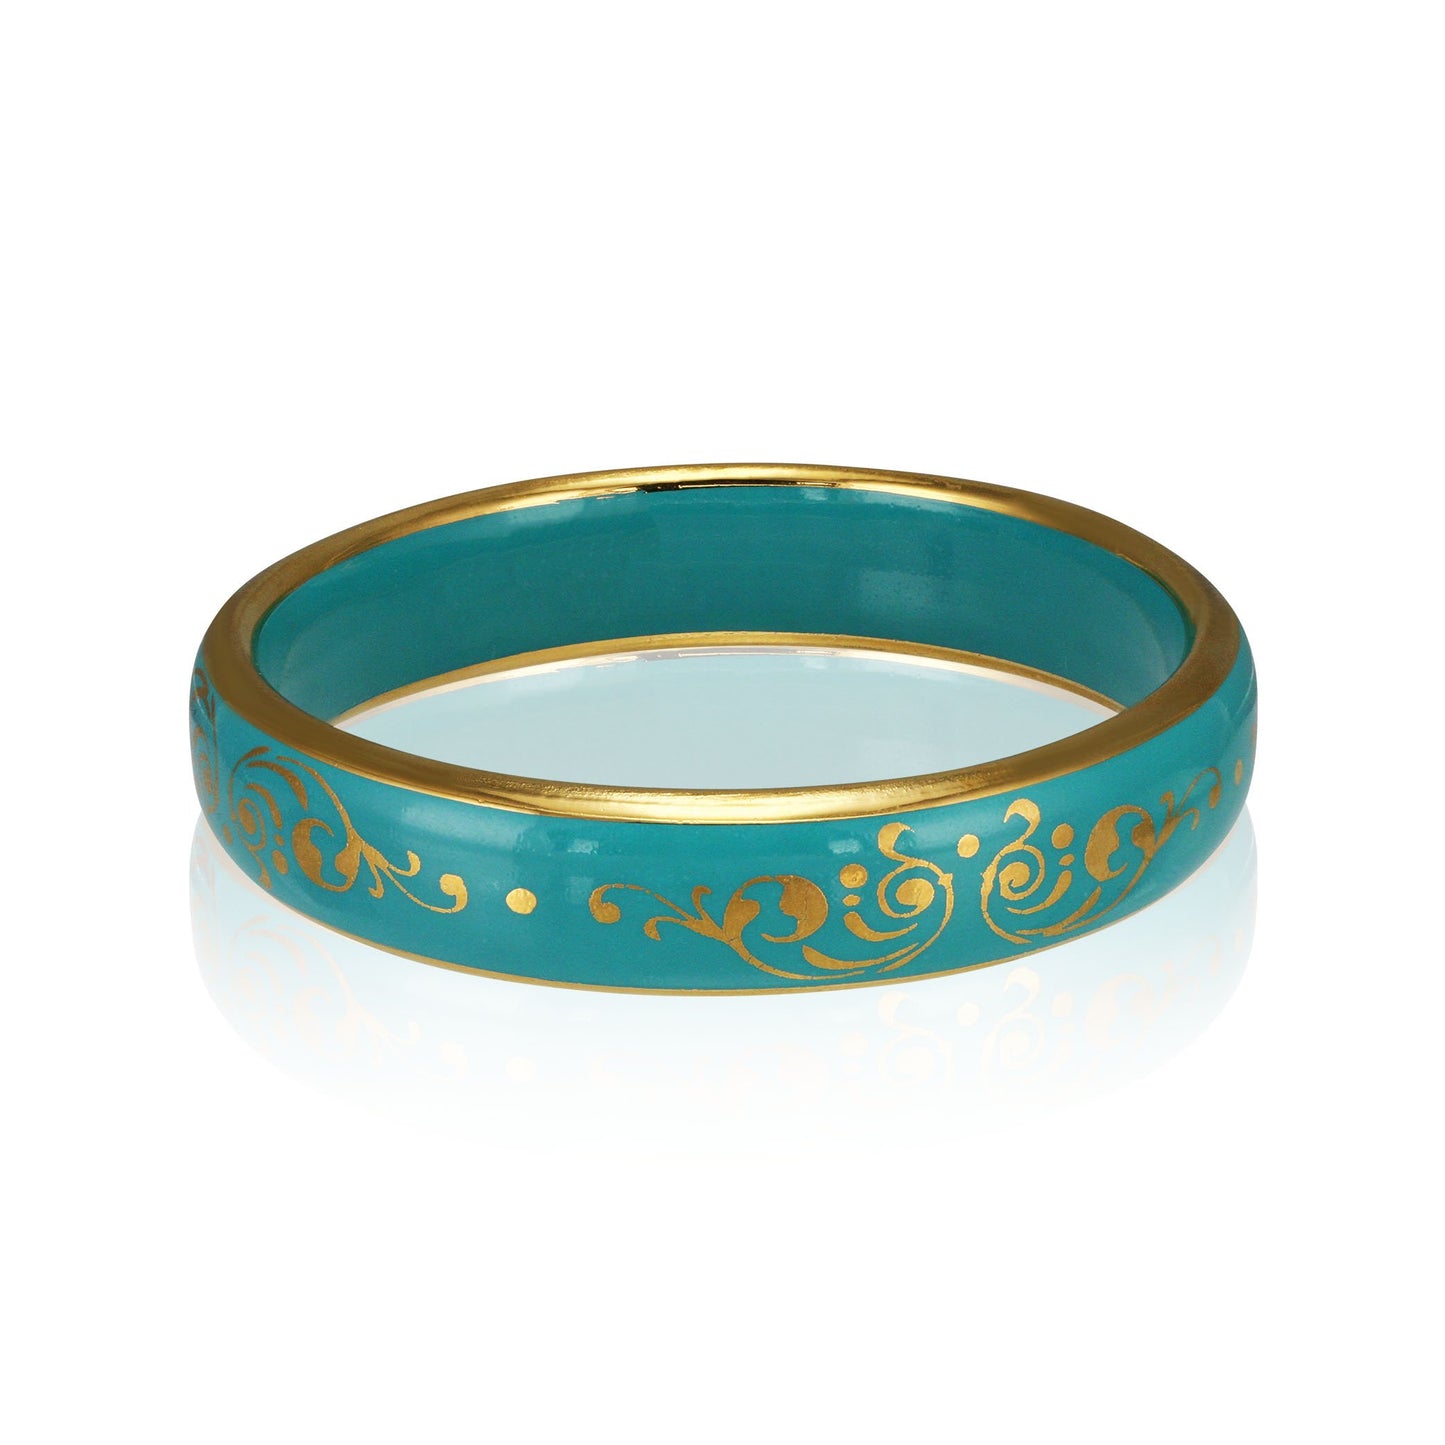 BAROQUE mint green gold plated fine porcelain bracelet